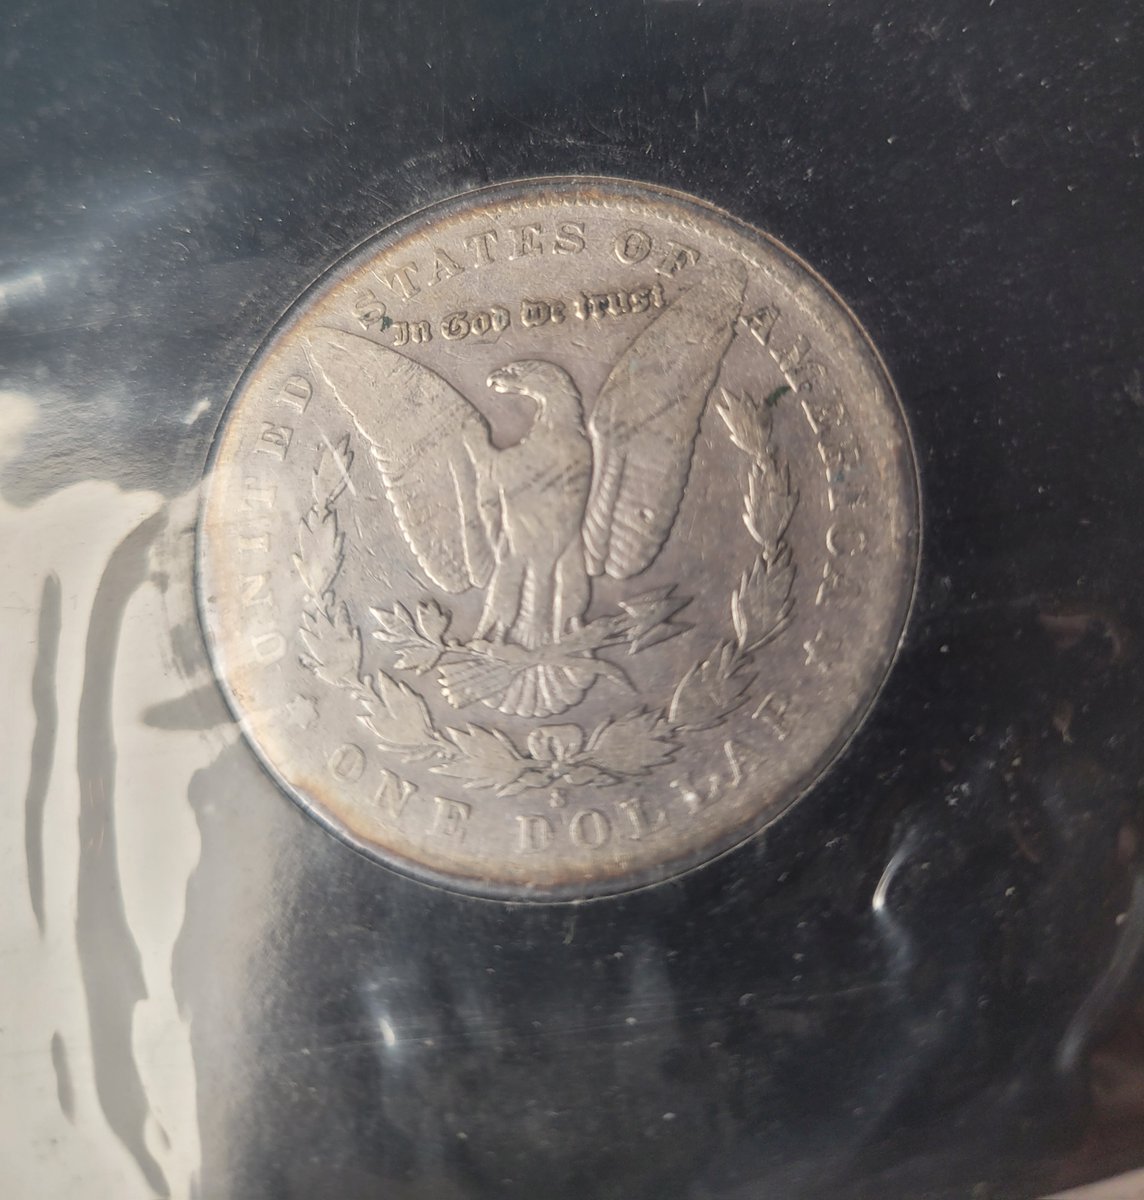 Do you own any silver coins? #silver #coin #silvercoins #money #numismatics #coincollecting #rarecoins #preciousmetals